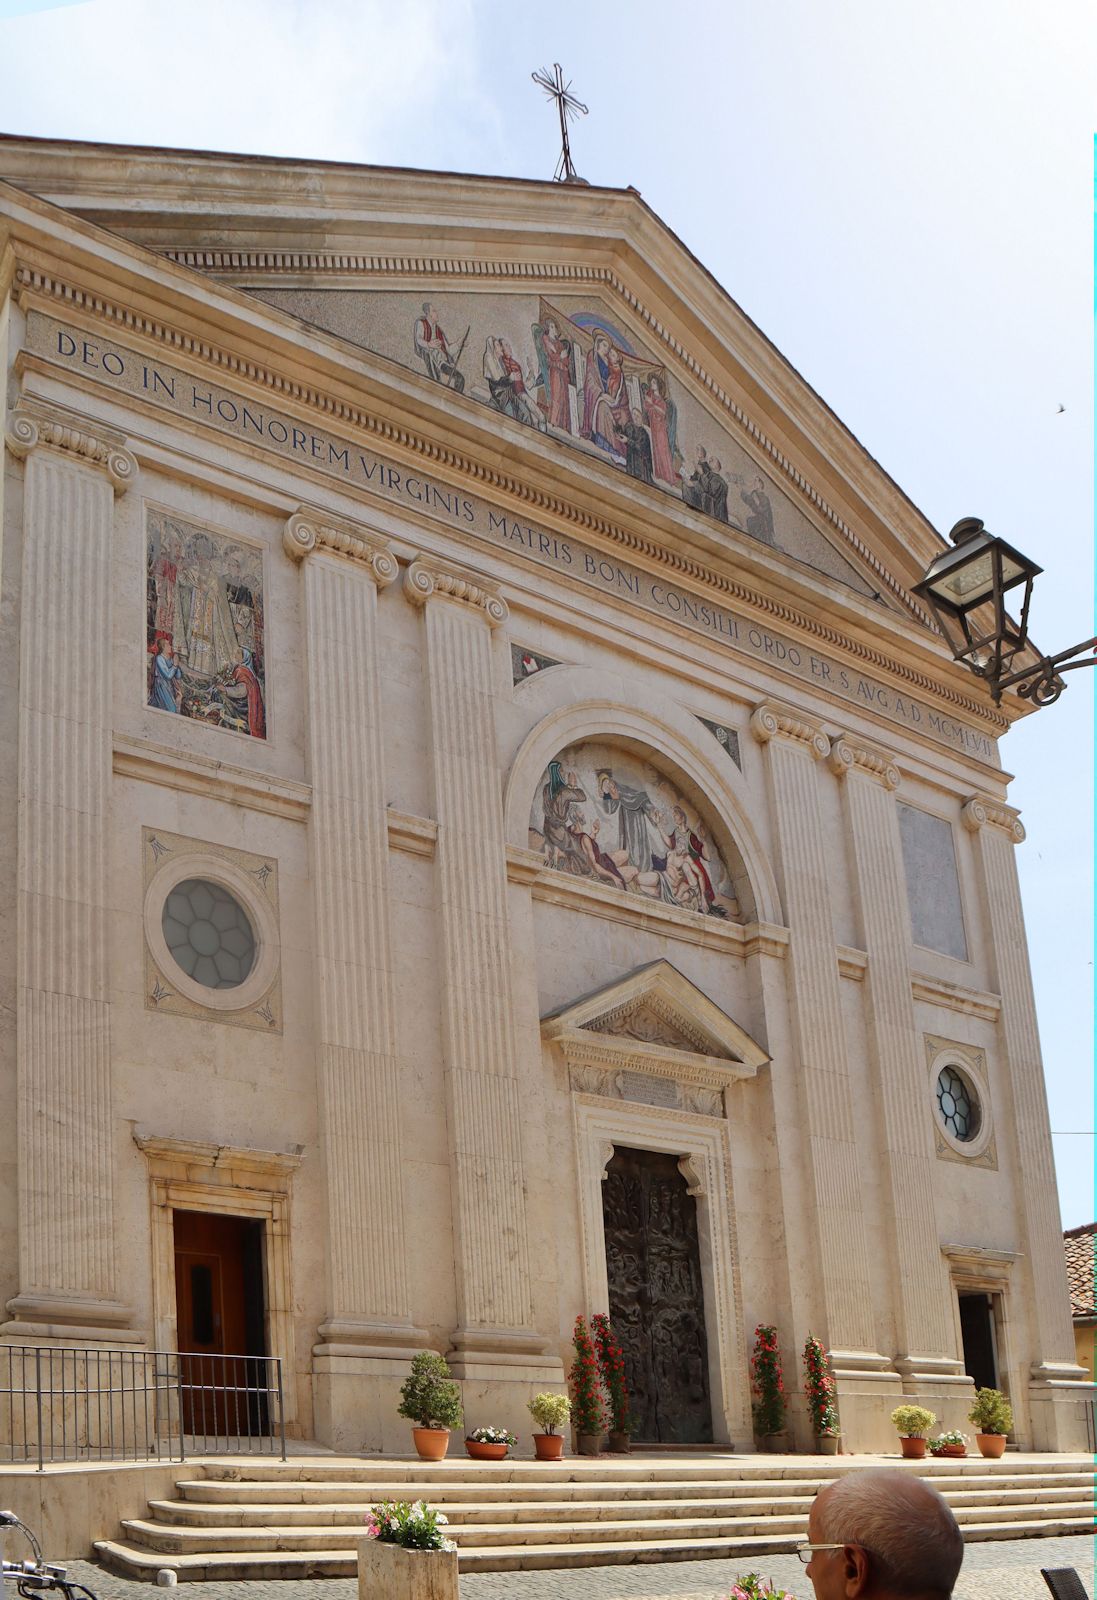 Sanktuarium della Madonna del Buon Consiglio in Genazzano